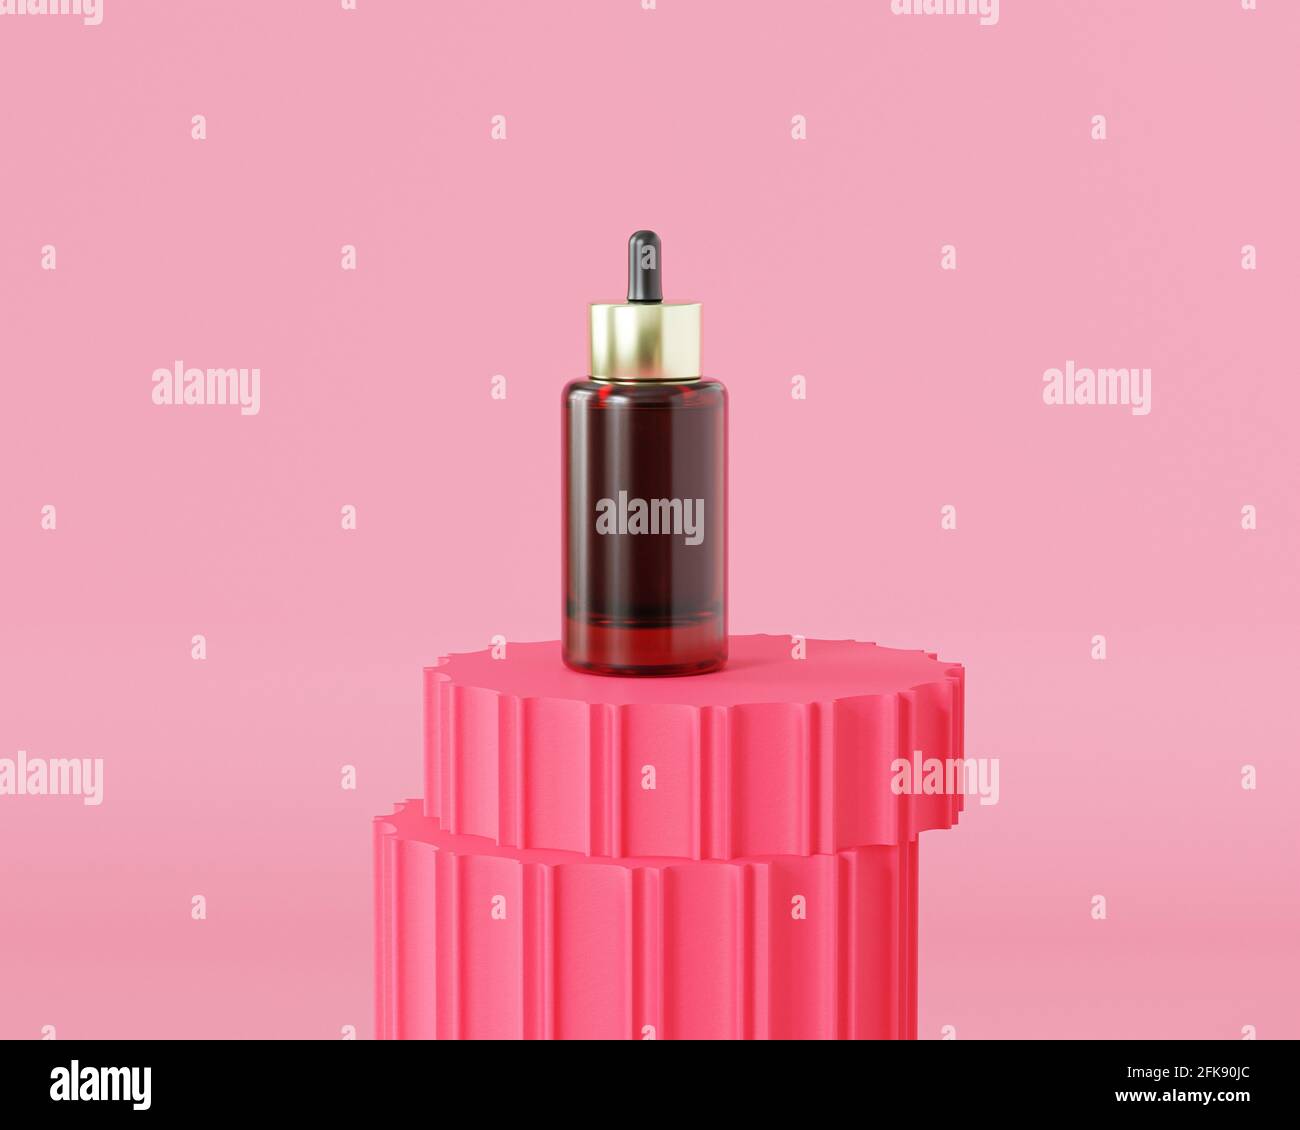 Flacon compte-gouttes en verre pour produits cosmétiques ou publicité sur podium rose, rendu d'illustration 3d Banque D'Images